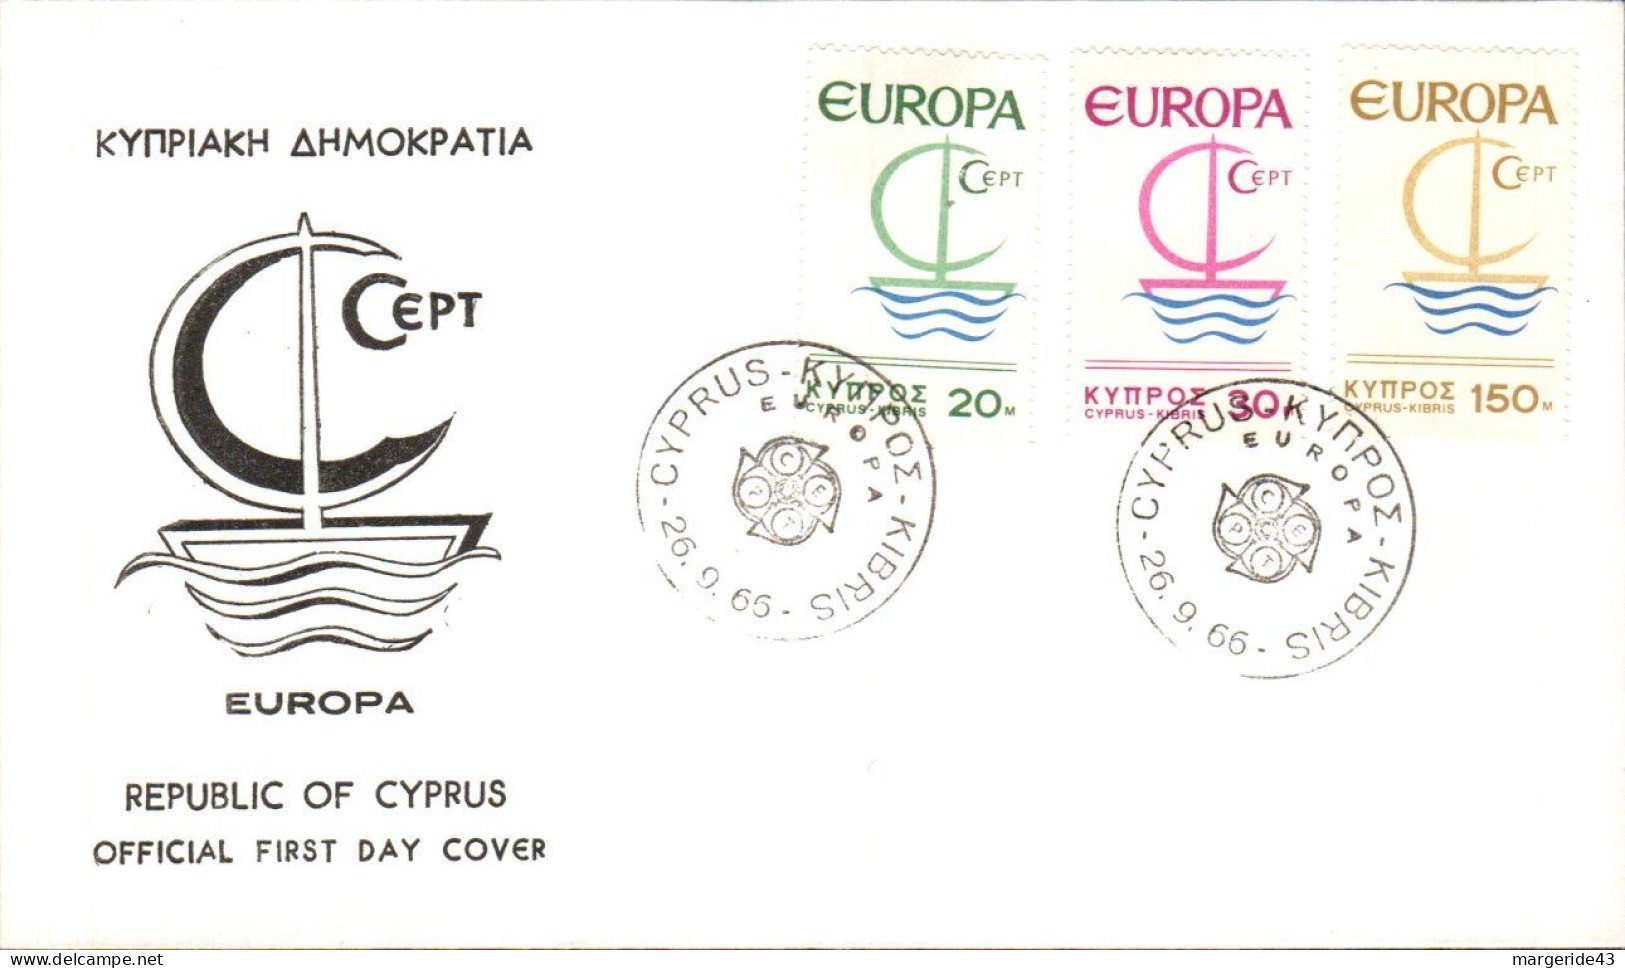 EUROPA 1965 CHYPRE  FDC - 1965